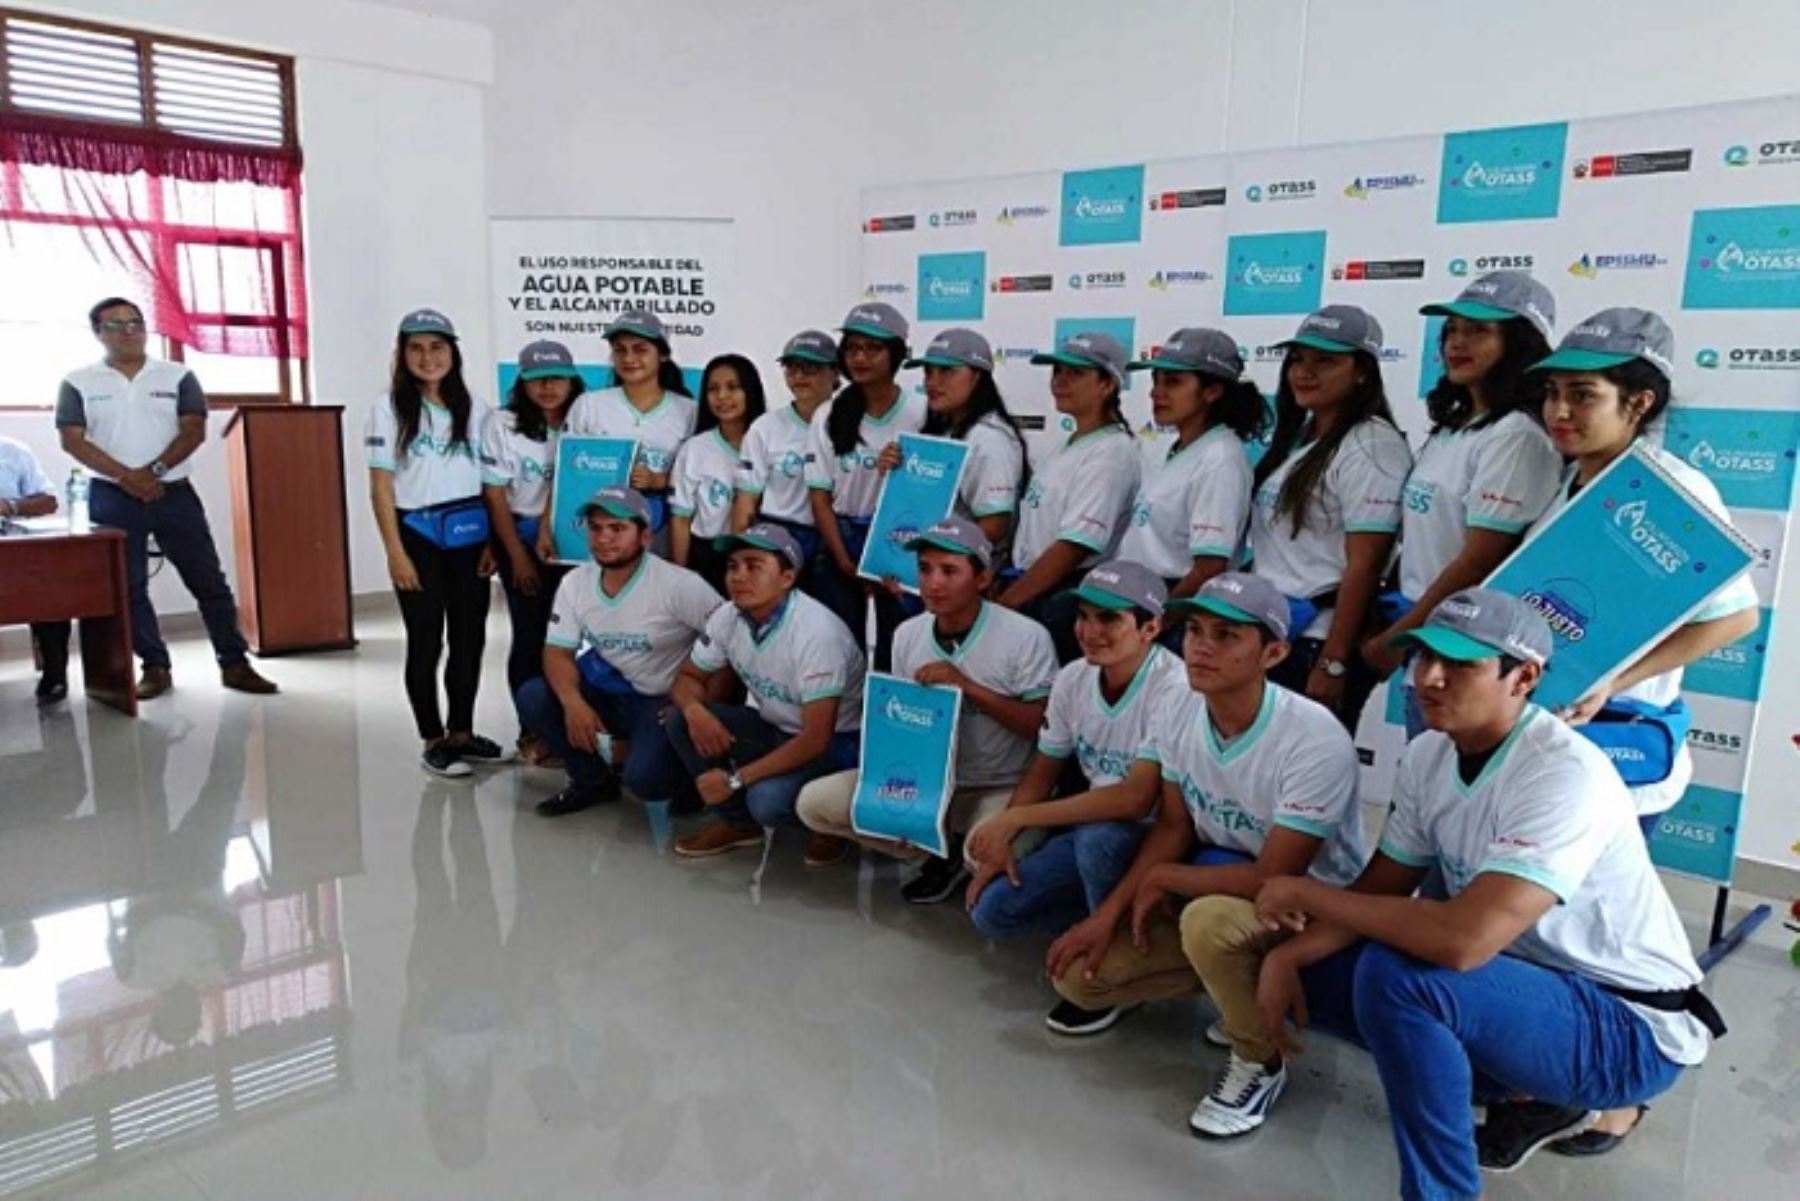 El Organismo Técnico de la Administración de los Servicios de Saneamiento (OTASS) y la empresa prestadora de servicios de saneamiento (EPS) lanzaron hoy el Voluntariado OTASS en la ciudad de Bagua Grande, capital de la provincia de Utcubamba, región Amazonas, que involucra a jóvenes universitarios.